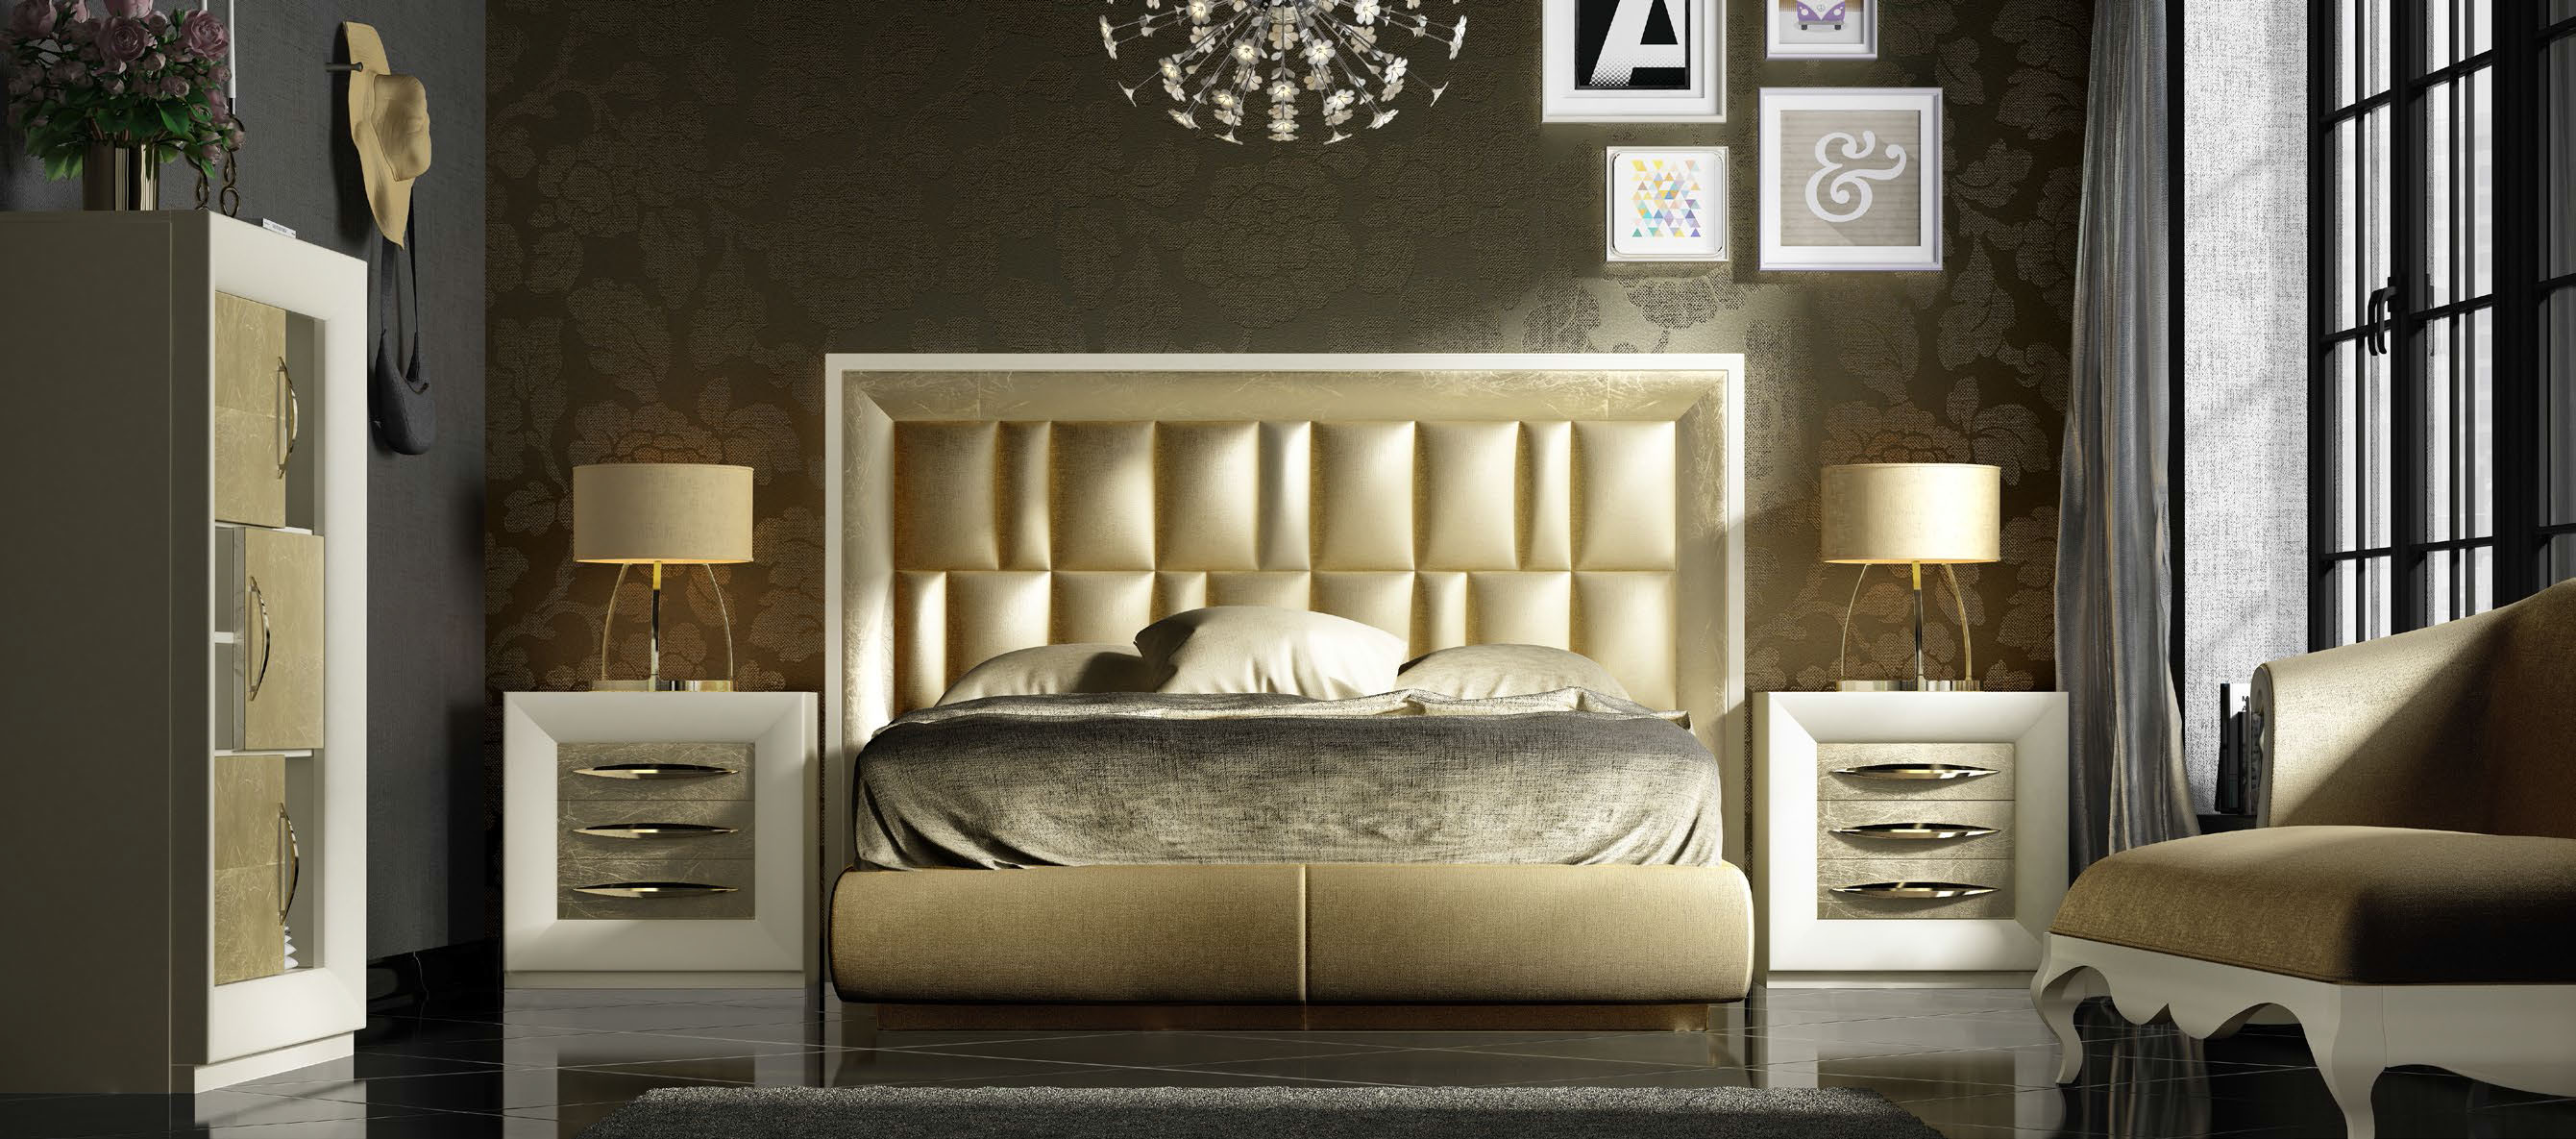 Brands Franco ENZO Bedrooms, Spain DOR 118